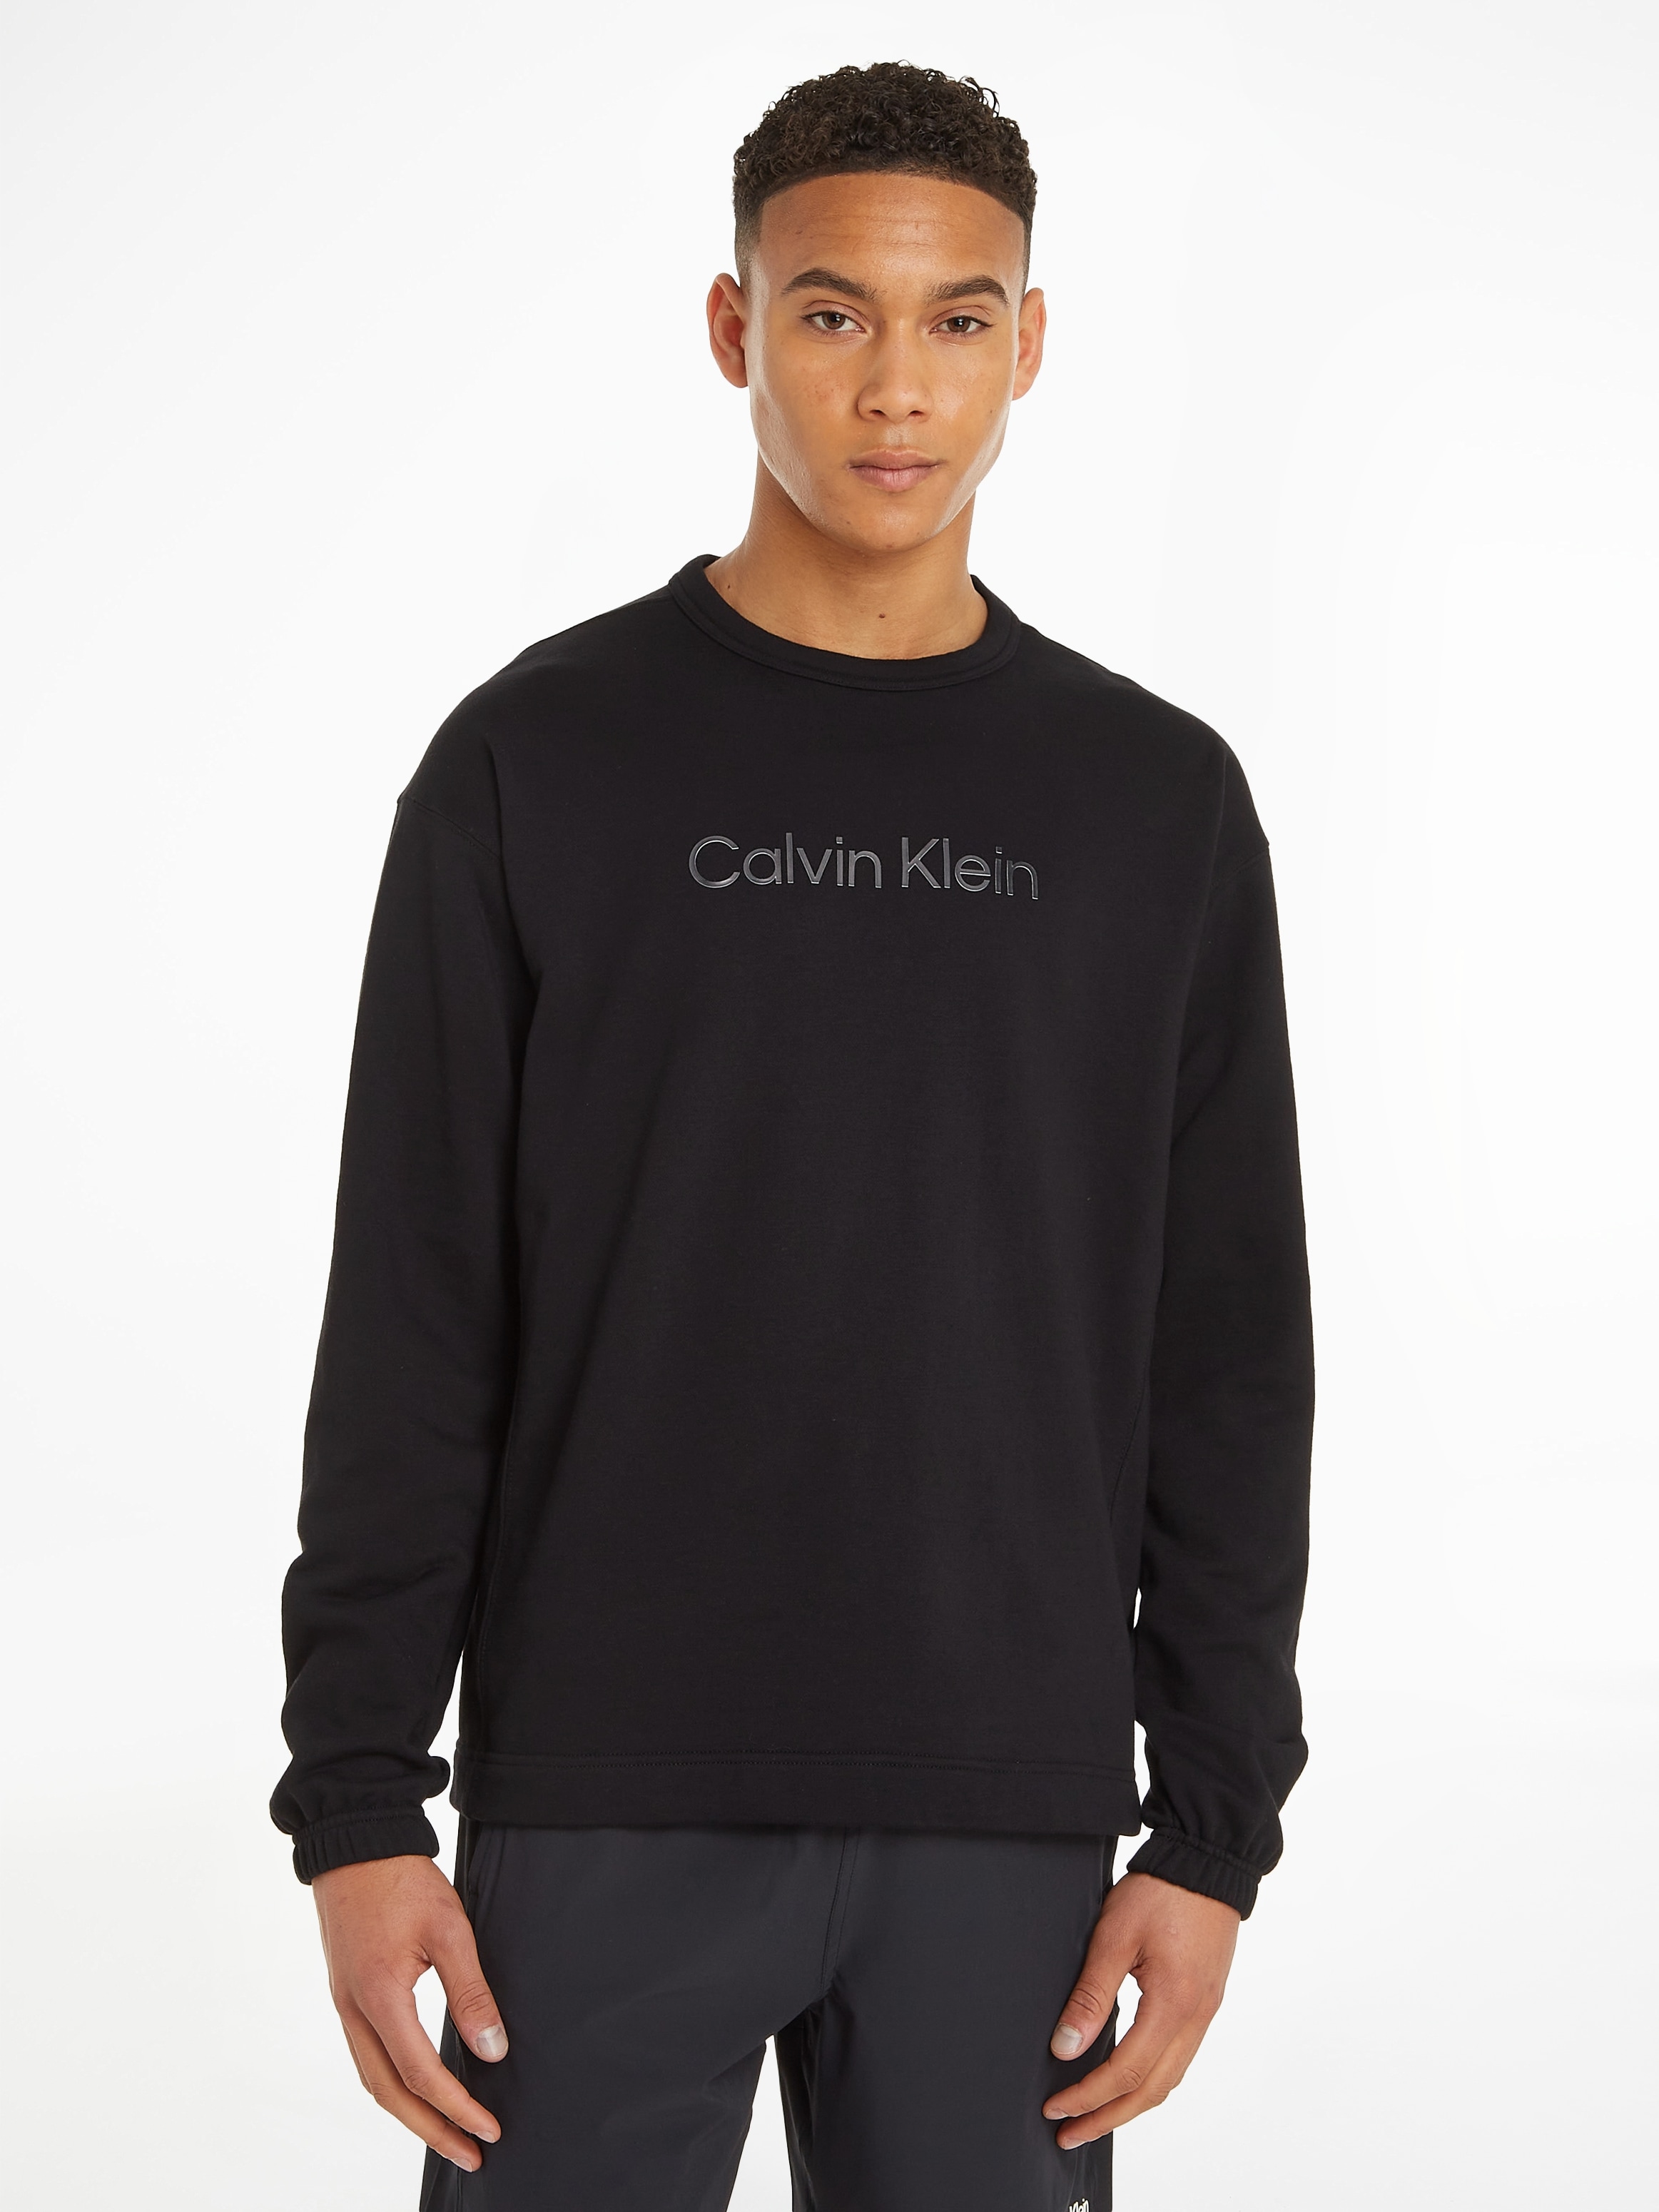 Calvin Klein Sport Sweatshirt »Sweatshirt PW« online shoppen bei OTTO